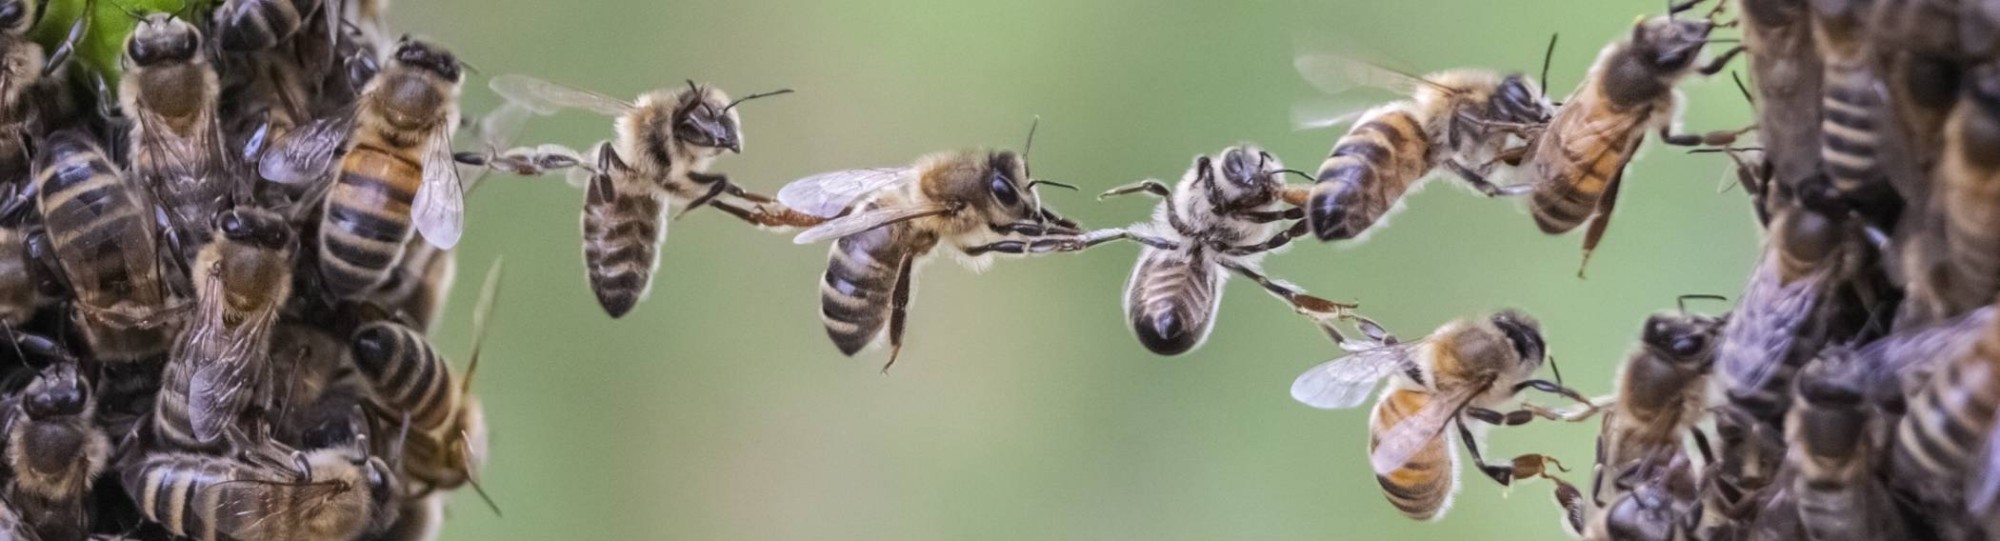 Stockfoto van samenwerkende bijen - een beeld dat het thema uitdrukt van de komende Circulaire Oogst, namelijk: All-inclusive | Een krachtig ecosysteem maken we samen.